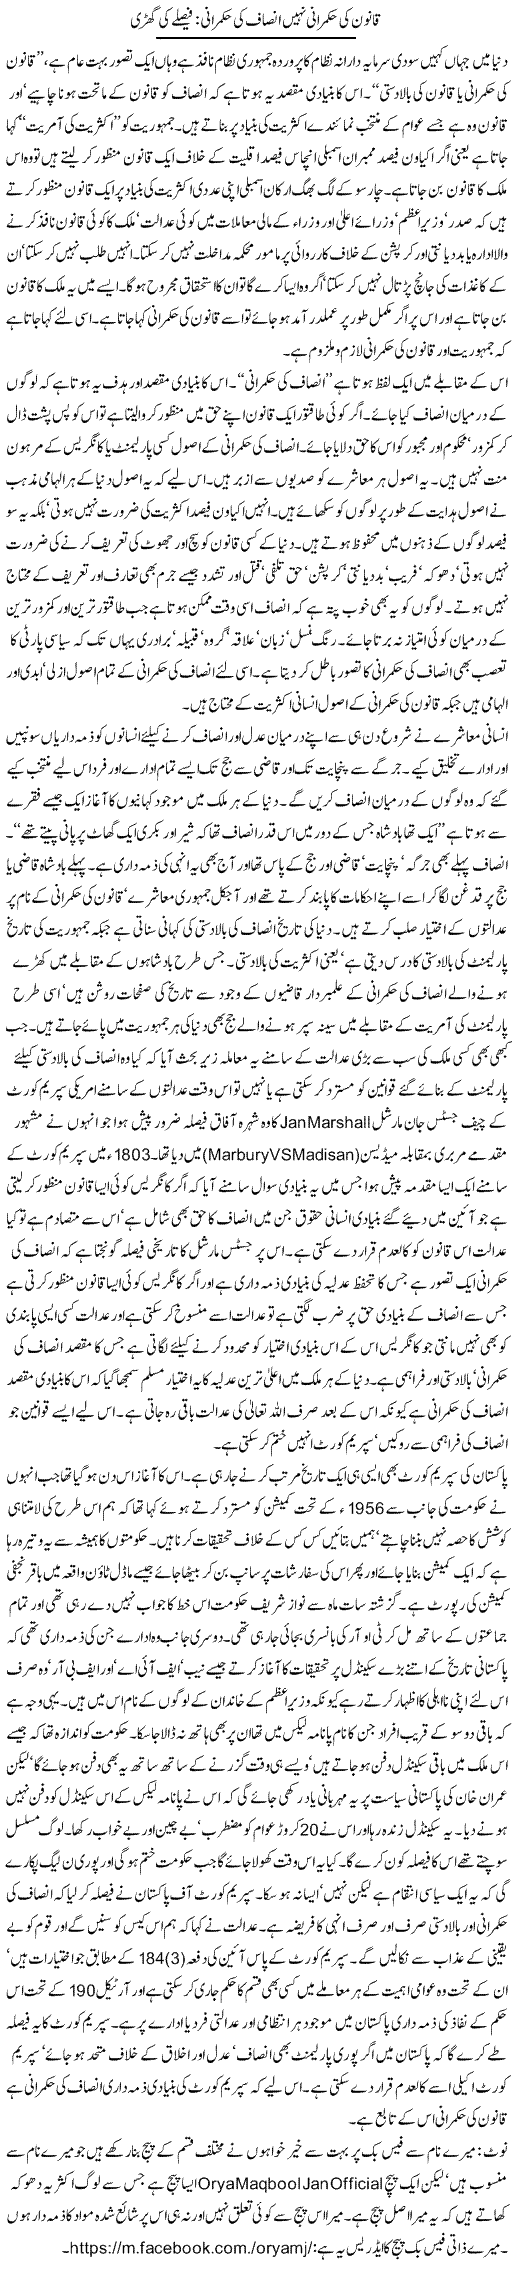 Qanoon Ki Hukmarani Nahi Insaf Ki Hukmarani, Faislay Ki Ghari | Orya Maqbool Jan | Daily Urdu Columns